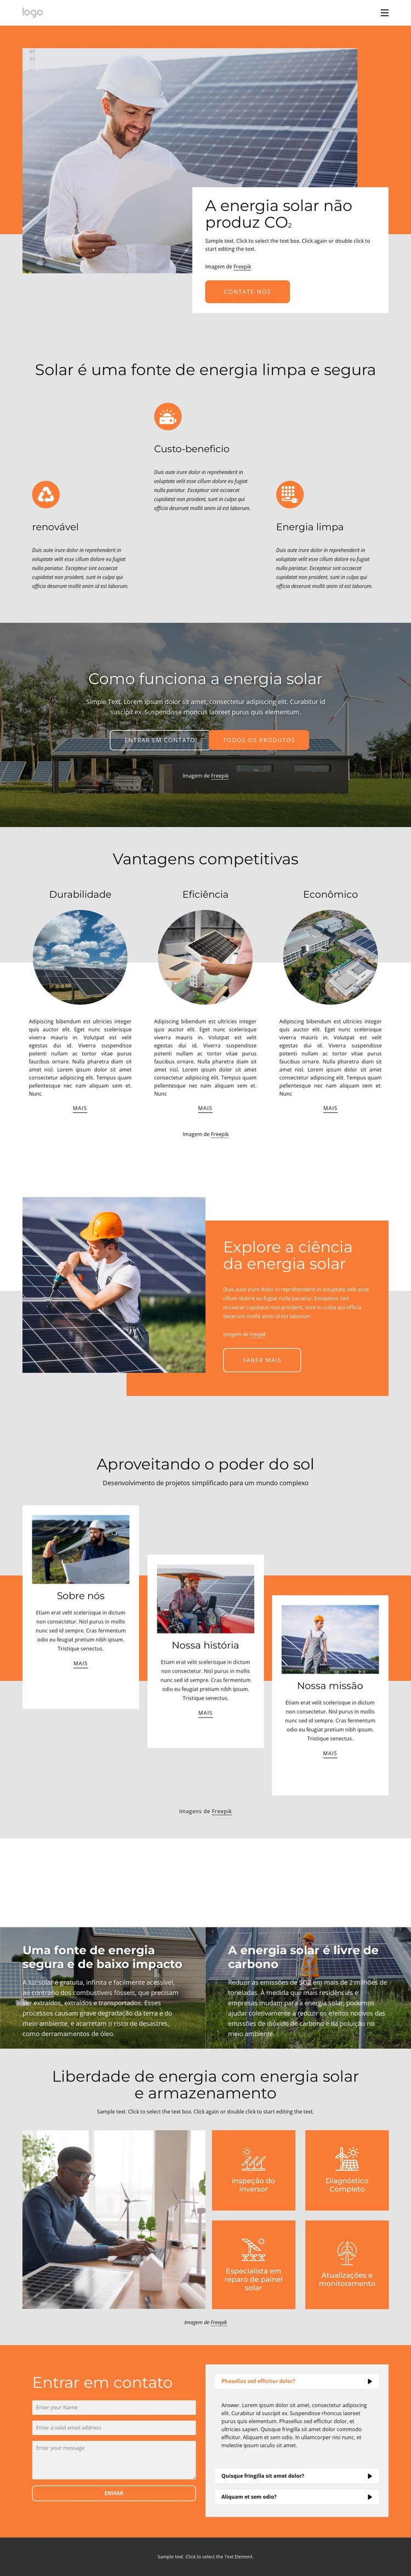 Alimente sua casa com energia solar limpa Modelo HTML